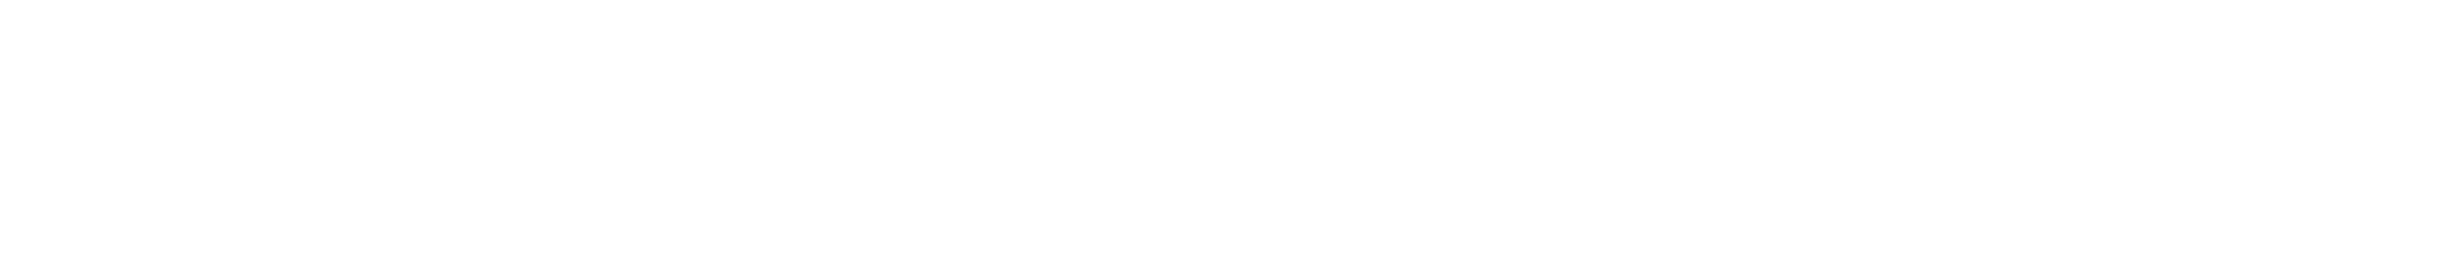 スペシャルコンテンツ ACO CHiLL CAMP 参加者限定ツアー